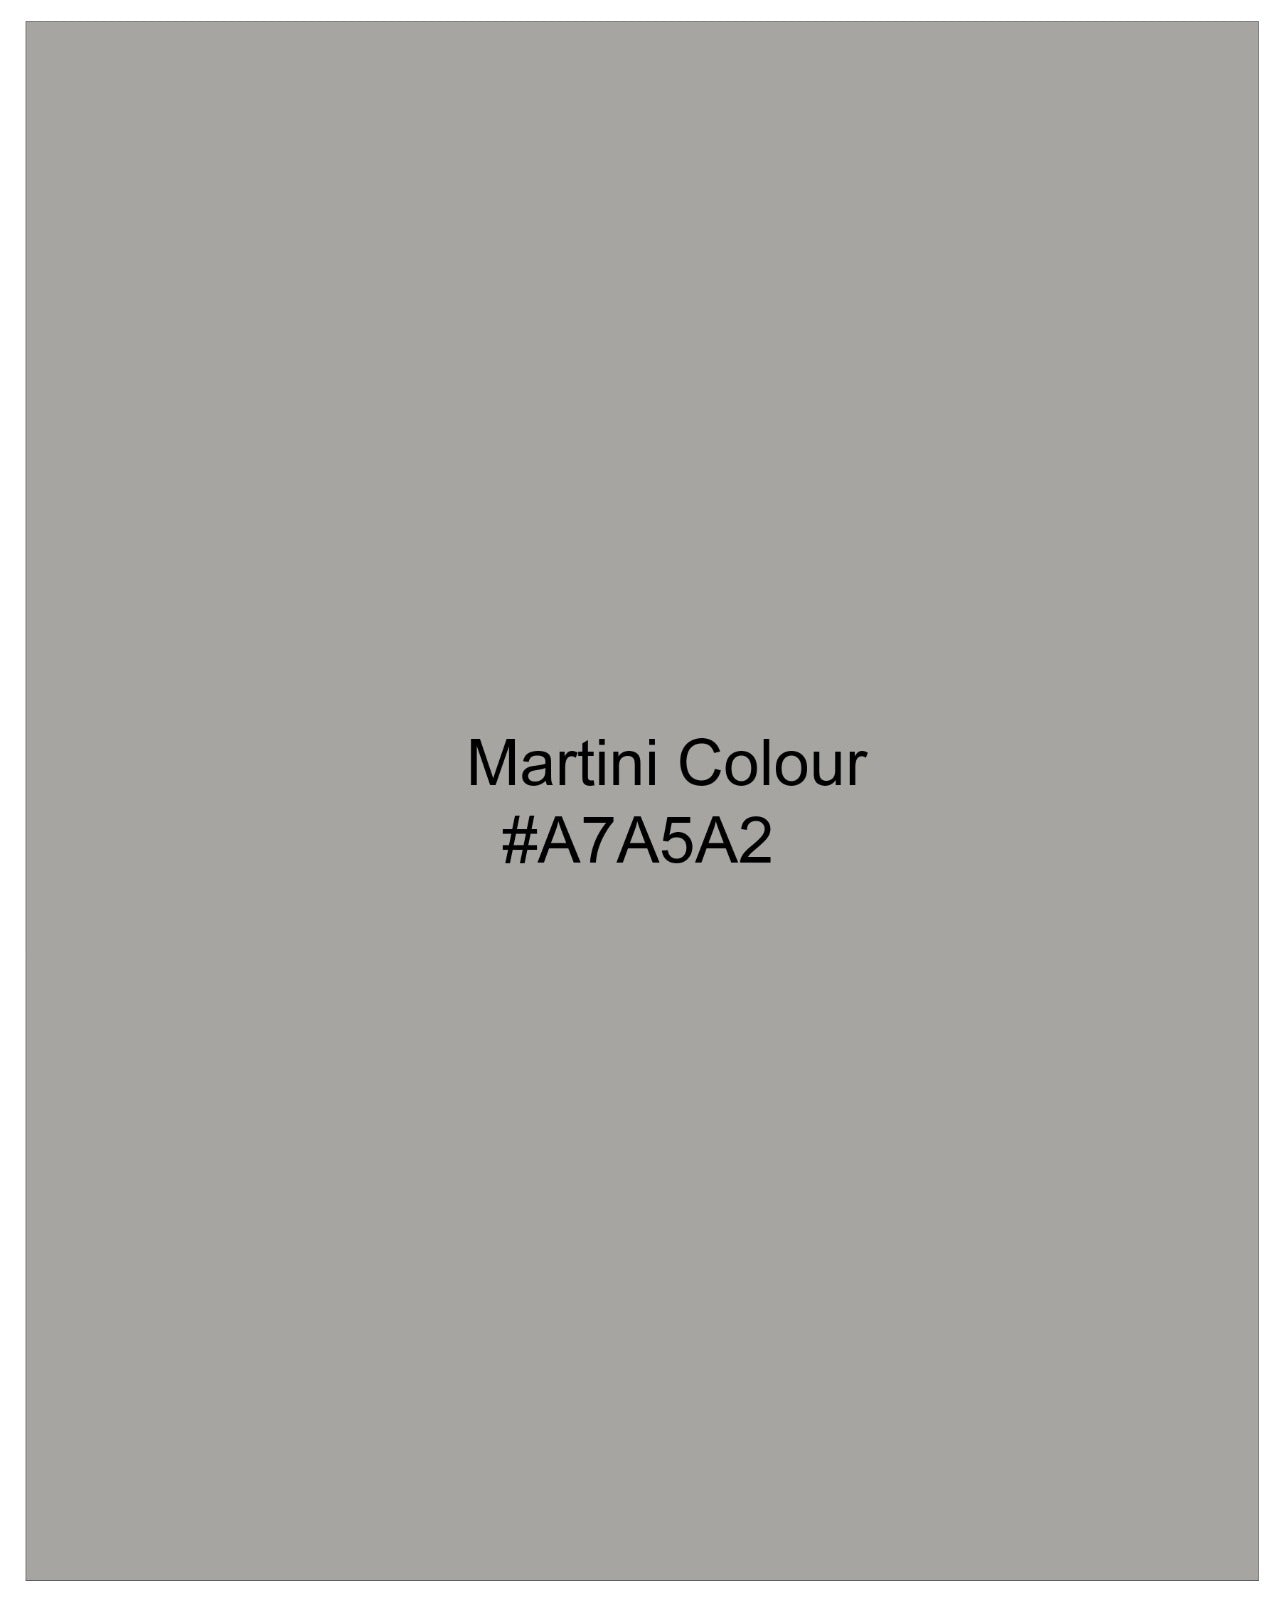 Martini Gray Stretchable Premium Cotton Traveler Suit ST2667-SB-36, ST2667-SB-38, ST2667-SB-40, ST2667-SB-42, ST2667-SB-44, ST2667-SB-46, ST2667-SB-48, ST2667-SB-50, ST2667-SB-52, ST2667-SB-54, ST2667-SB-56, ST2667-SB-58, ST2667-SB-60